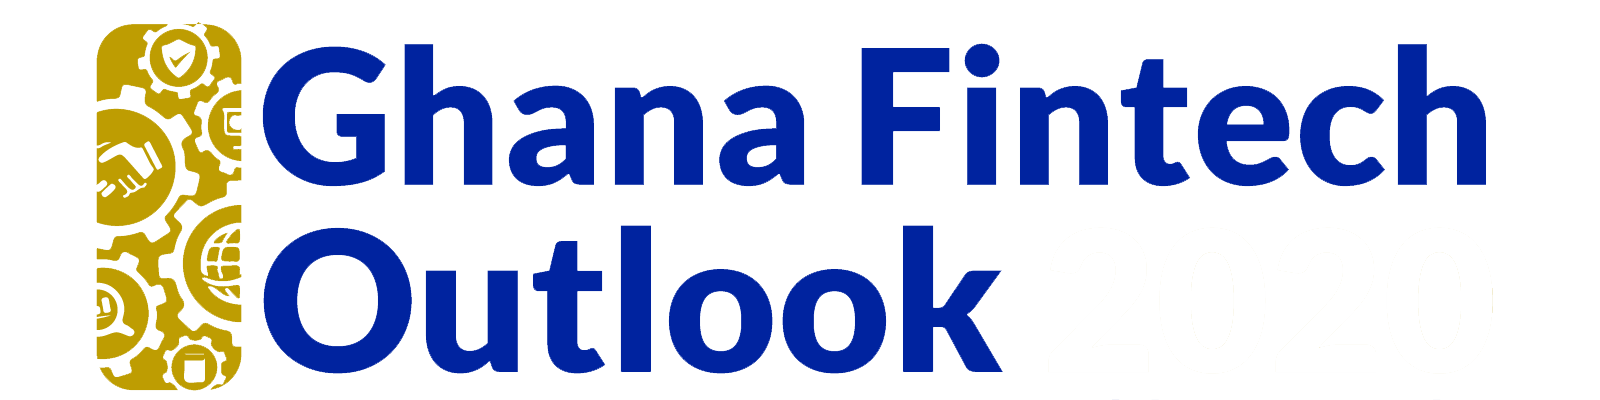 ghana fintech outlook (1)